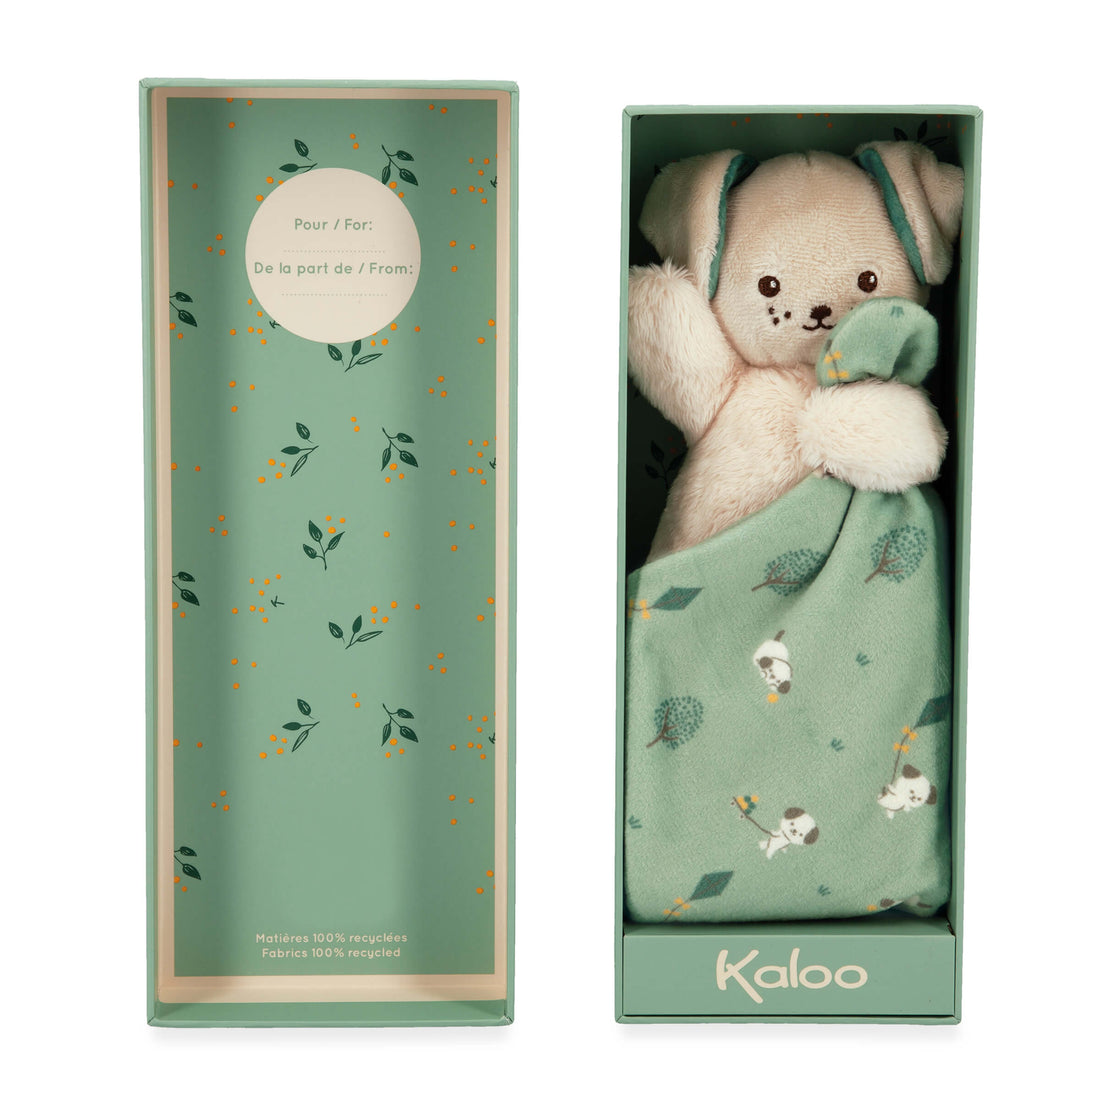 kaloo-doudou-dog-green-kalo-k226001